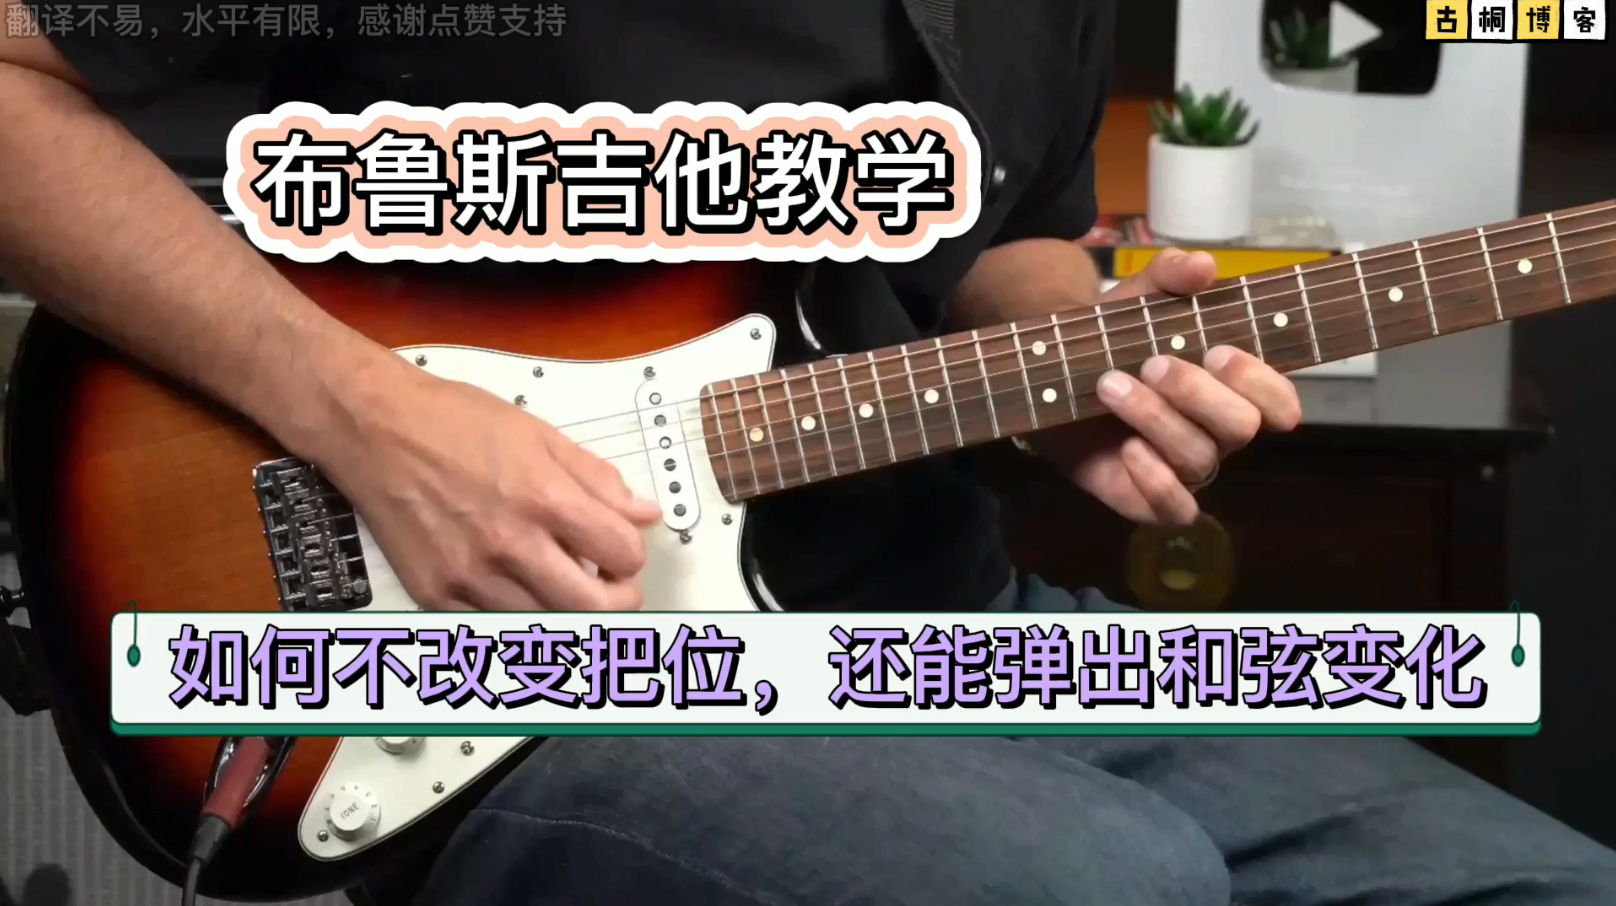 布鲁斯吉他教学 |如何不改变把位，还能弹出和弦变化《中文字幕》-古桐博客